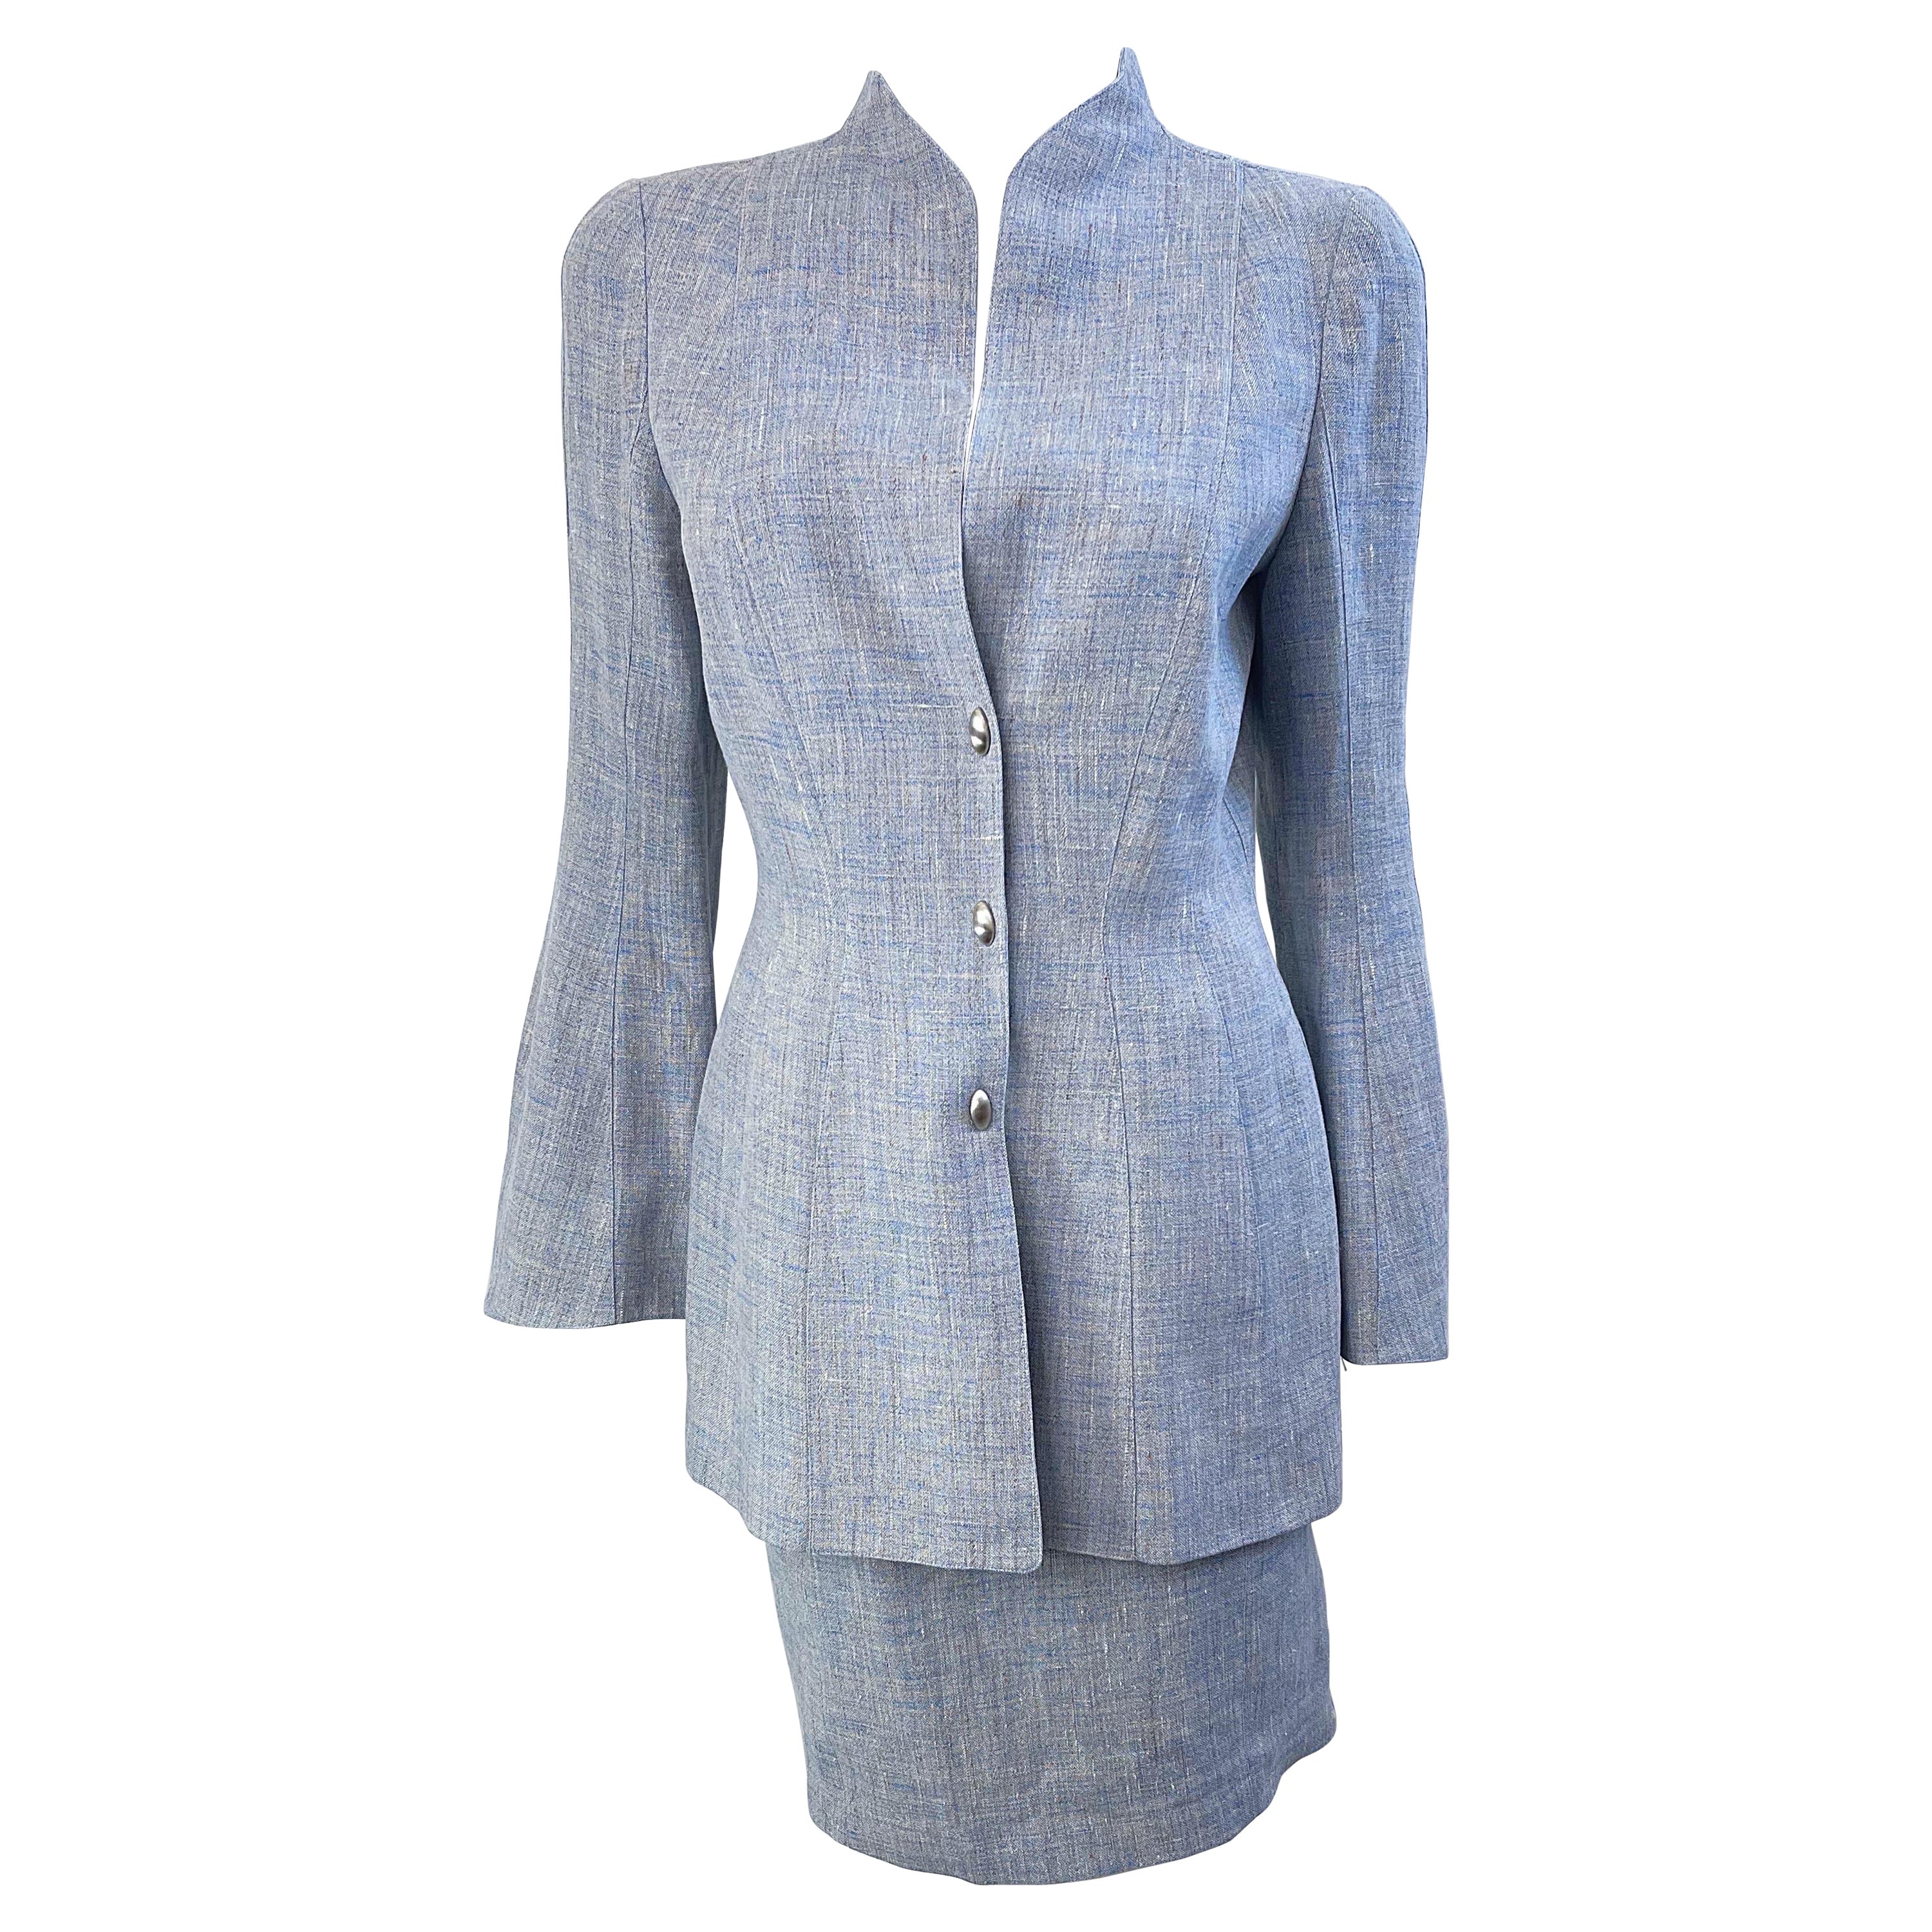 Thierry Mugler - Robe en lin bleu clair, taille 40/6, années 1990  Combinaison jupe vintage des années 90 en vente